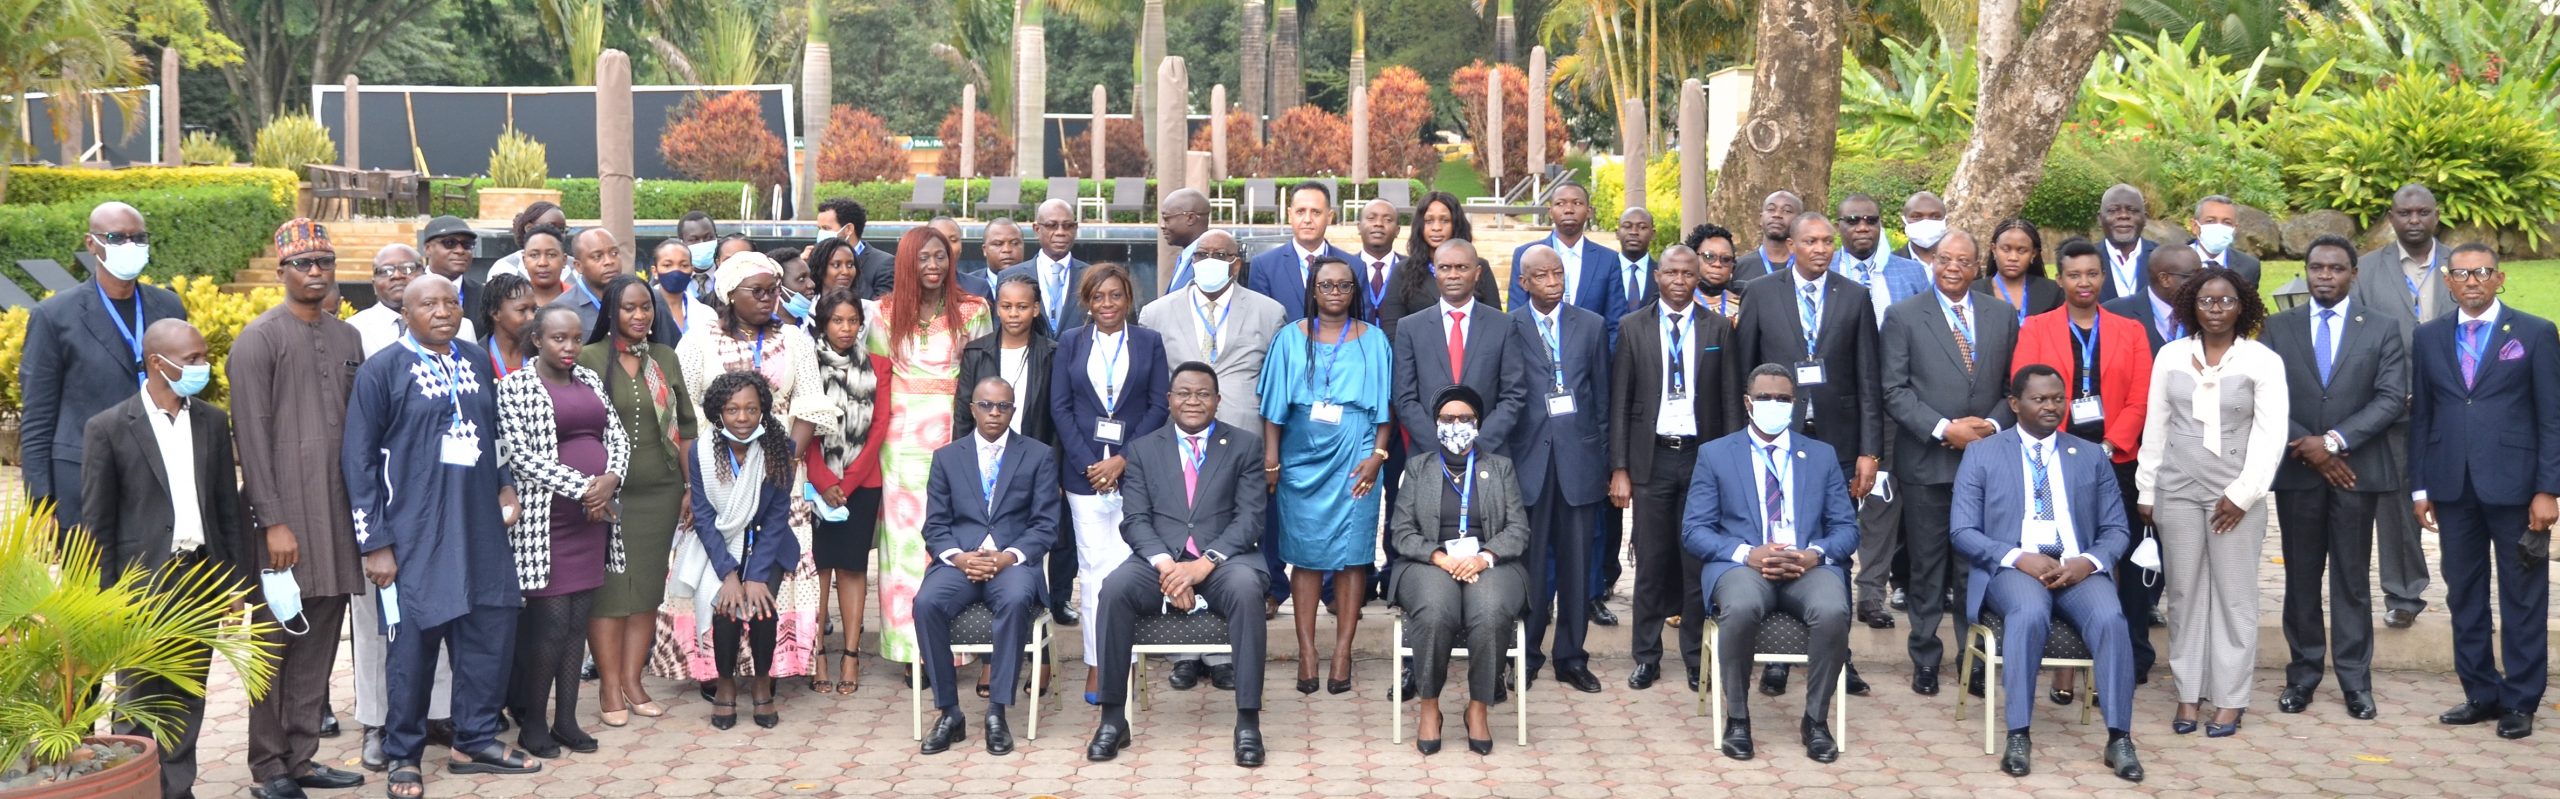 40 محاميا يحضرون تدريب المحكمة الأفريقية في أروشا